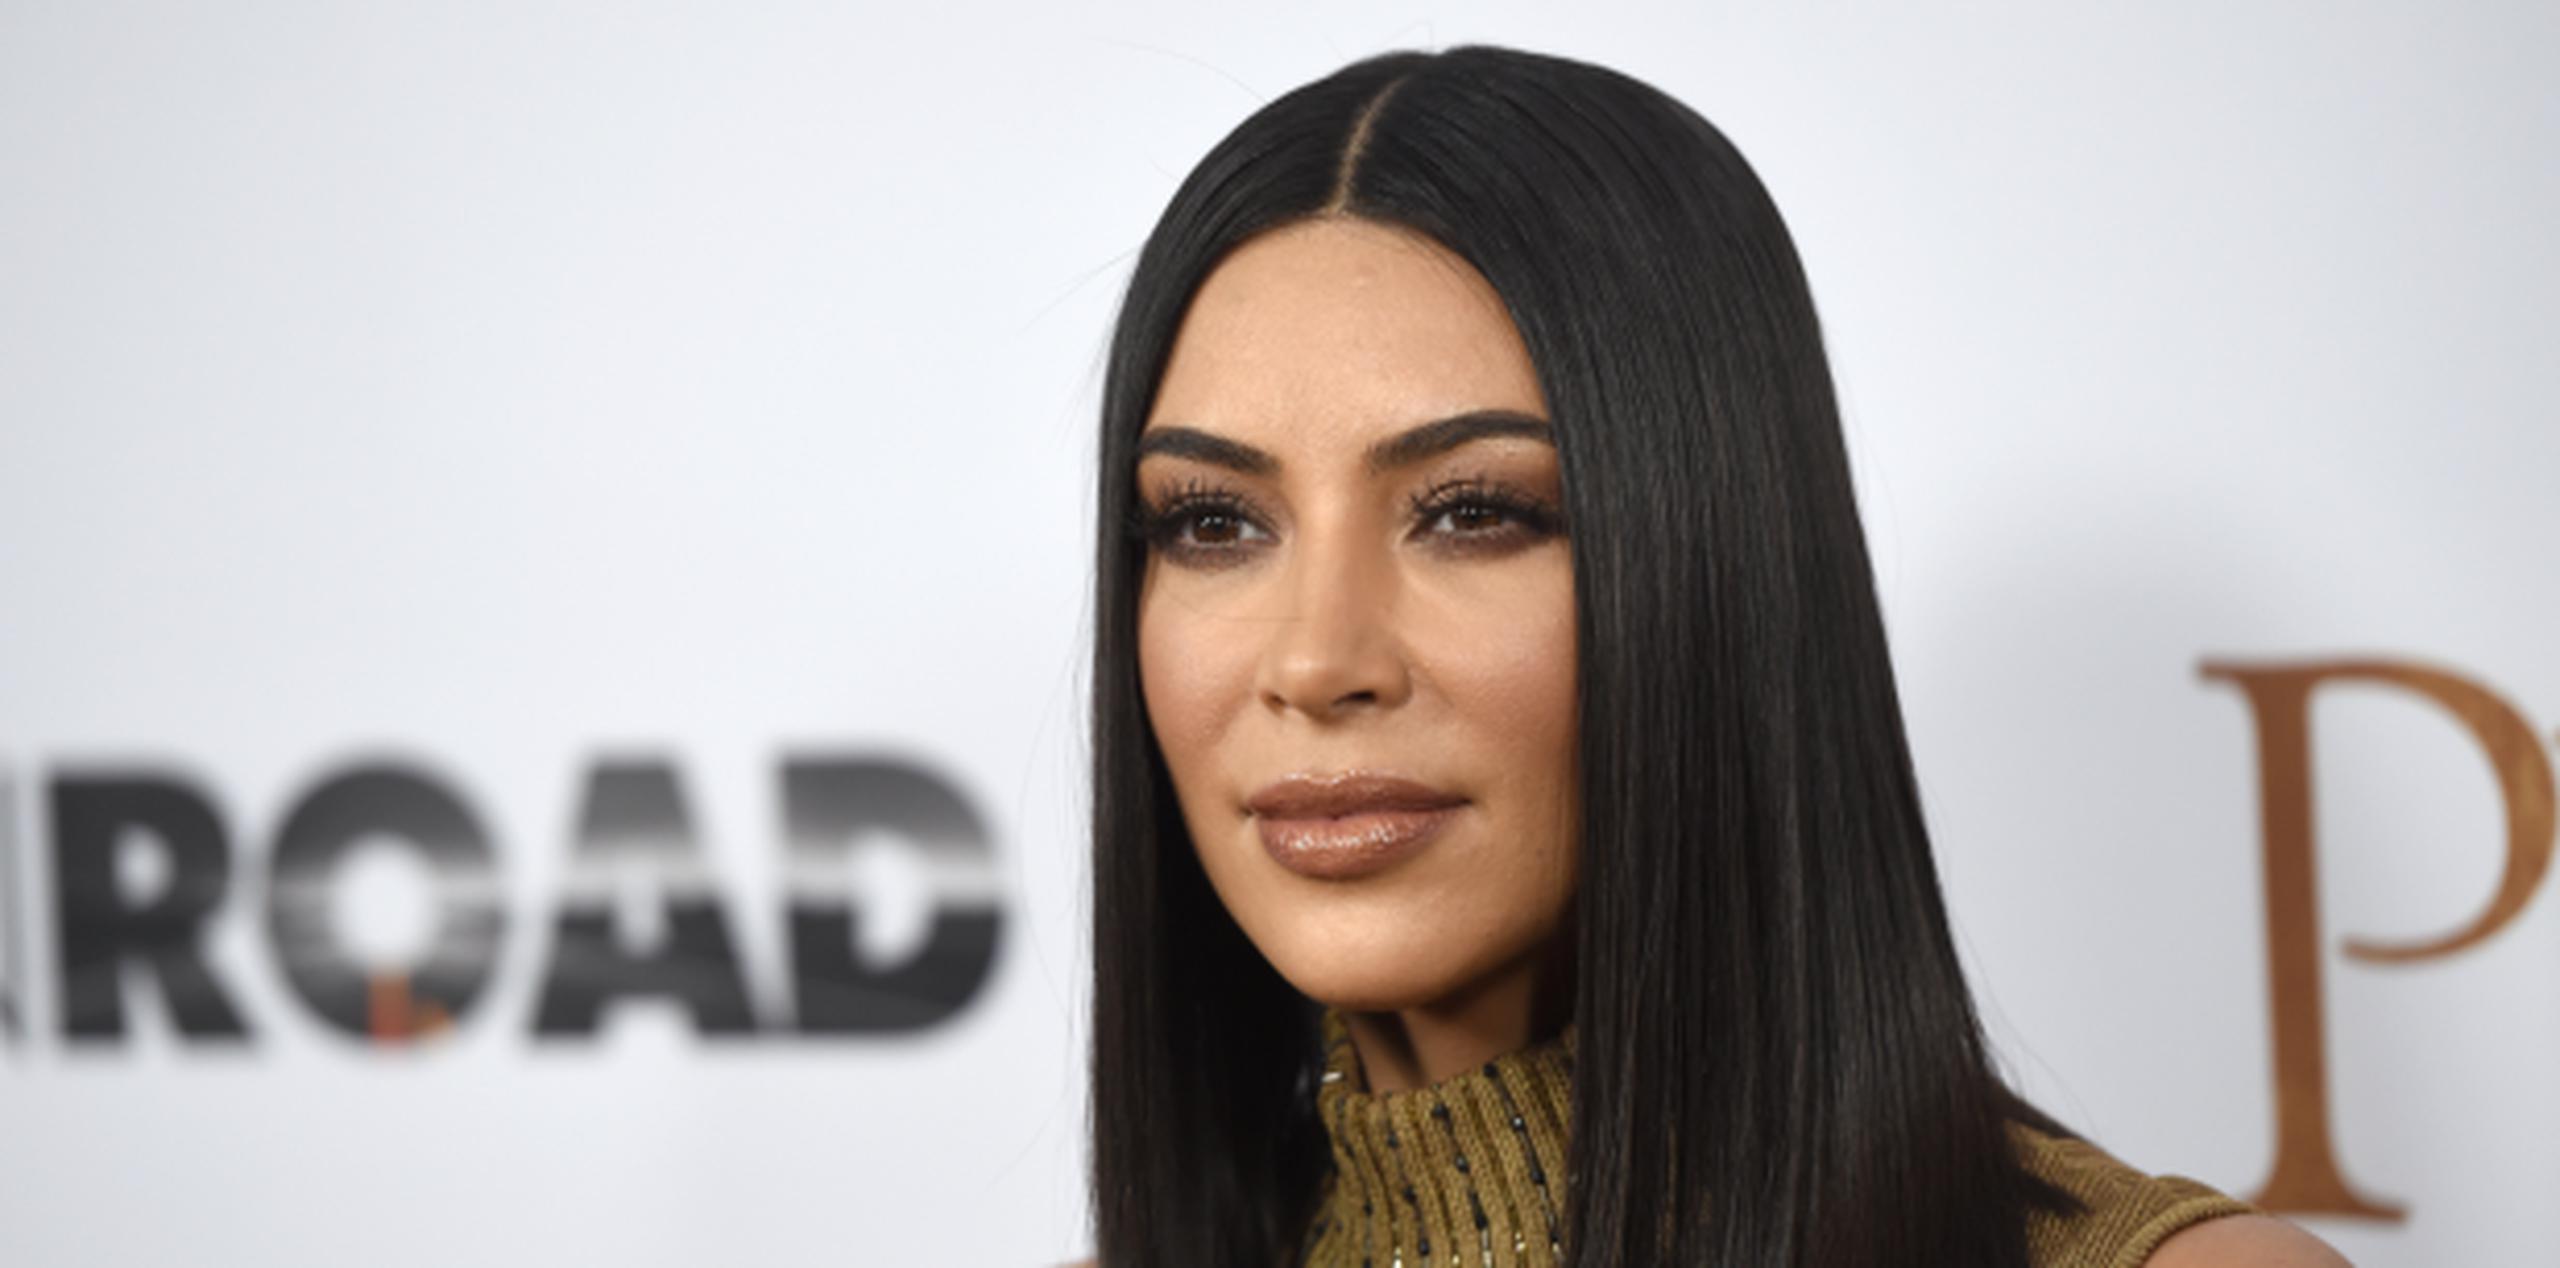 Kim Kardashian. (Chris Pizzello / Invision / AP)